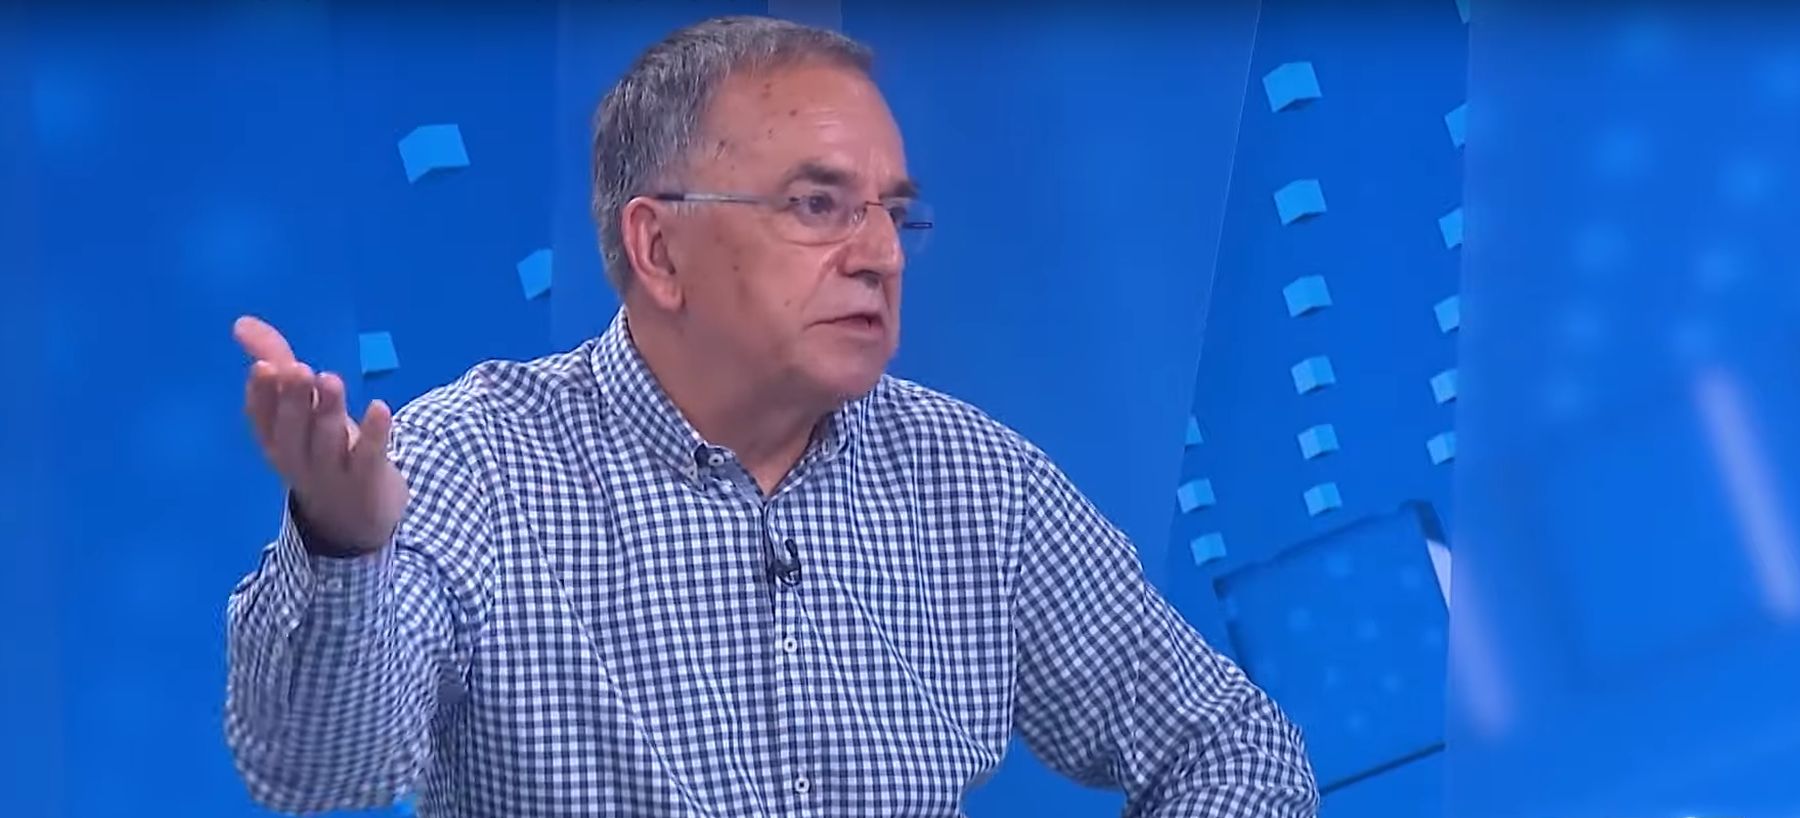 Ante Mandić: digitalizacija građanima treba omogućiti da zamjene državne službenike